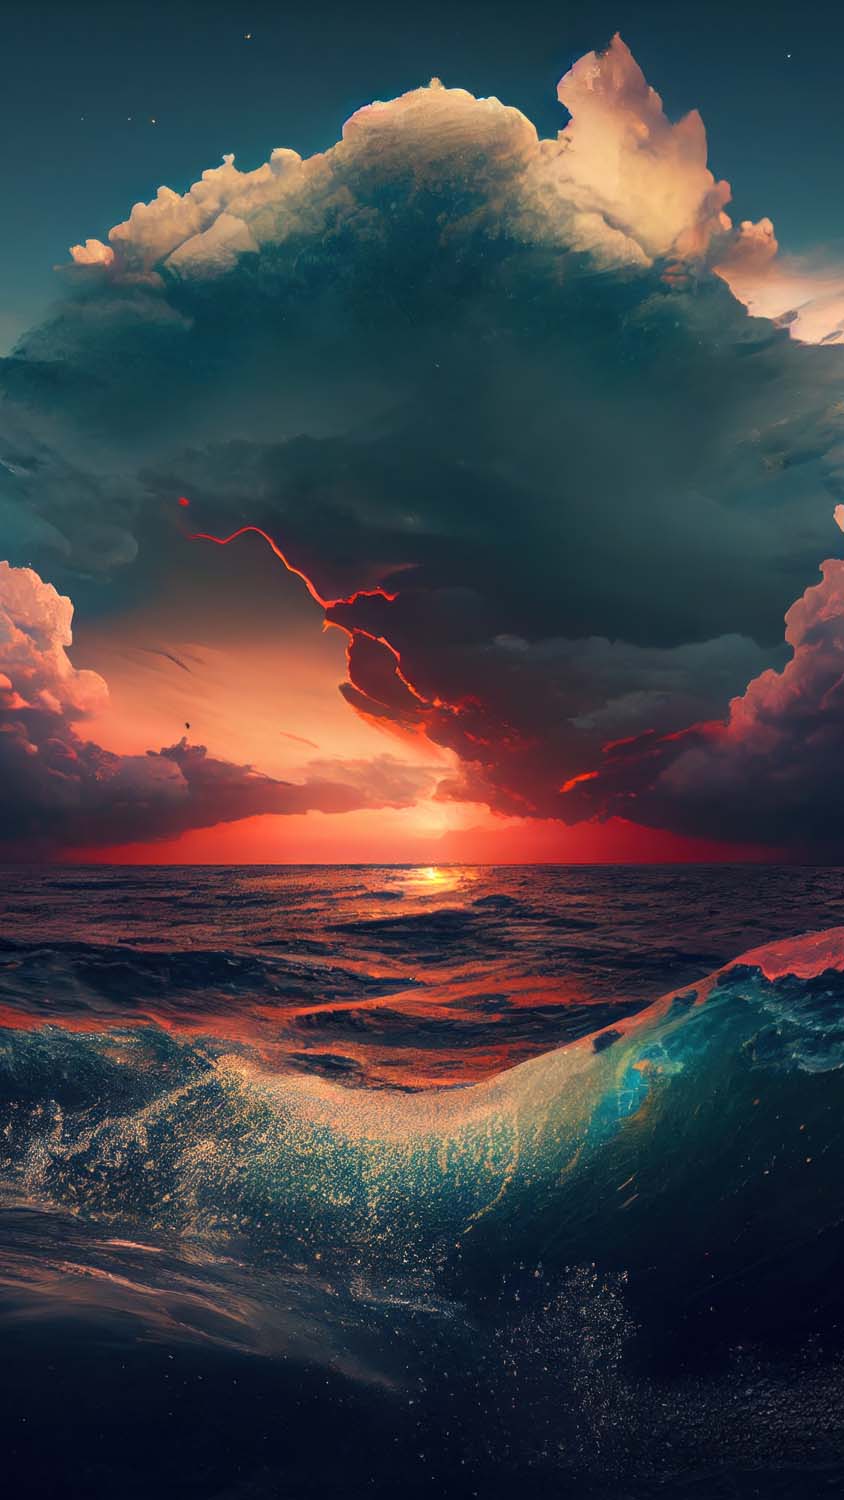 Ocean Wave IPhone Wallpaper 79 images